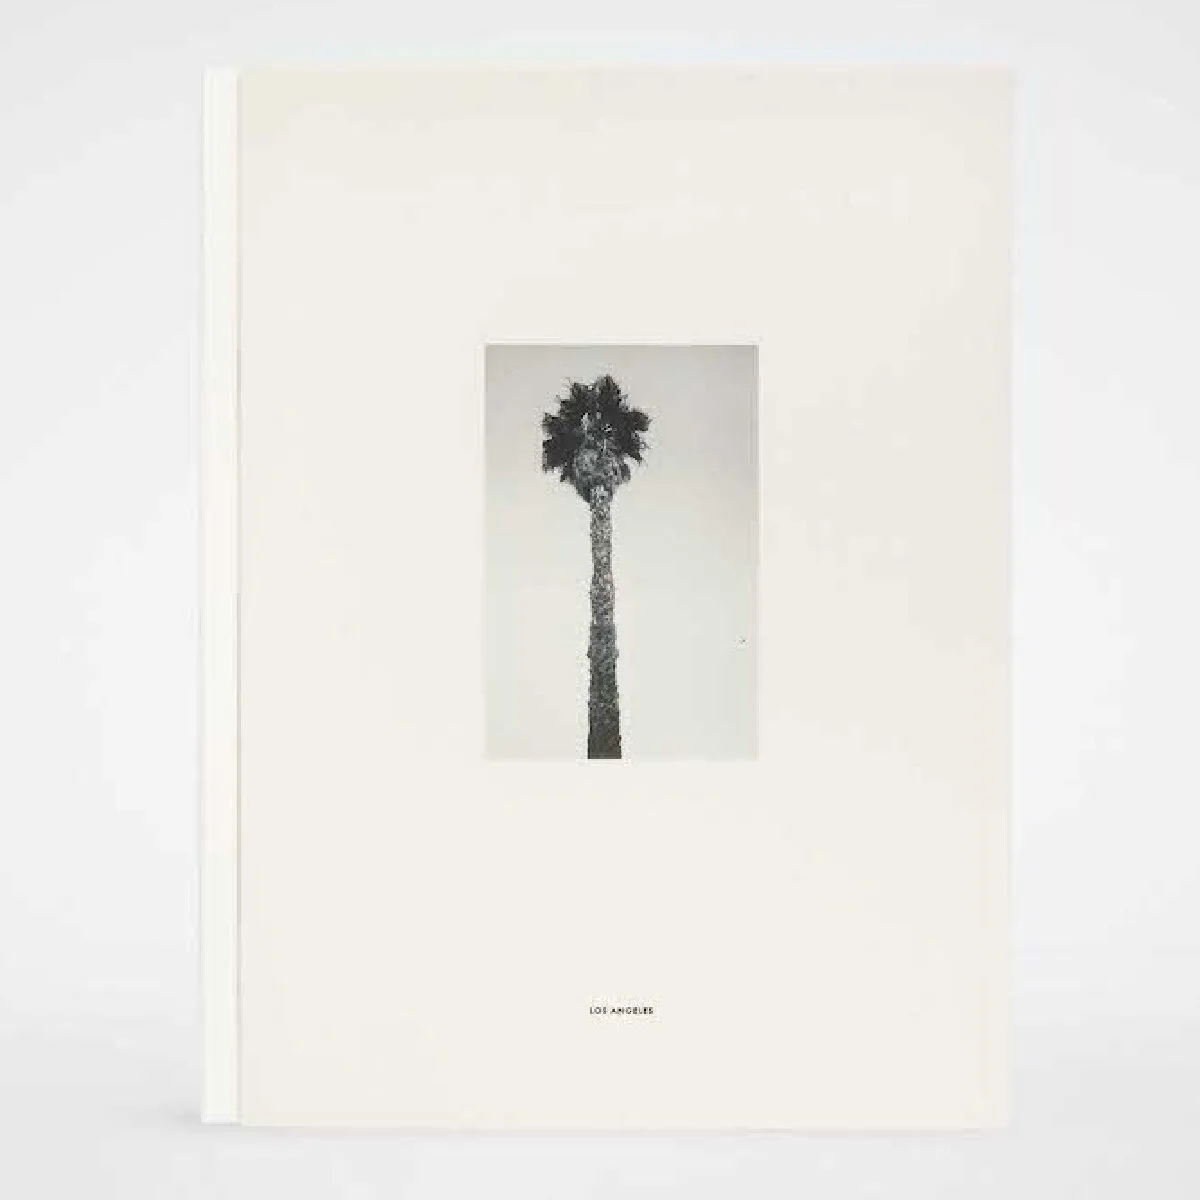 【ジル サンダー】が英国人写真家クリス・ローズとコラボ、限定本シリーズの新刊『Los Angeles』を発表